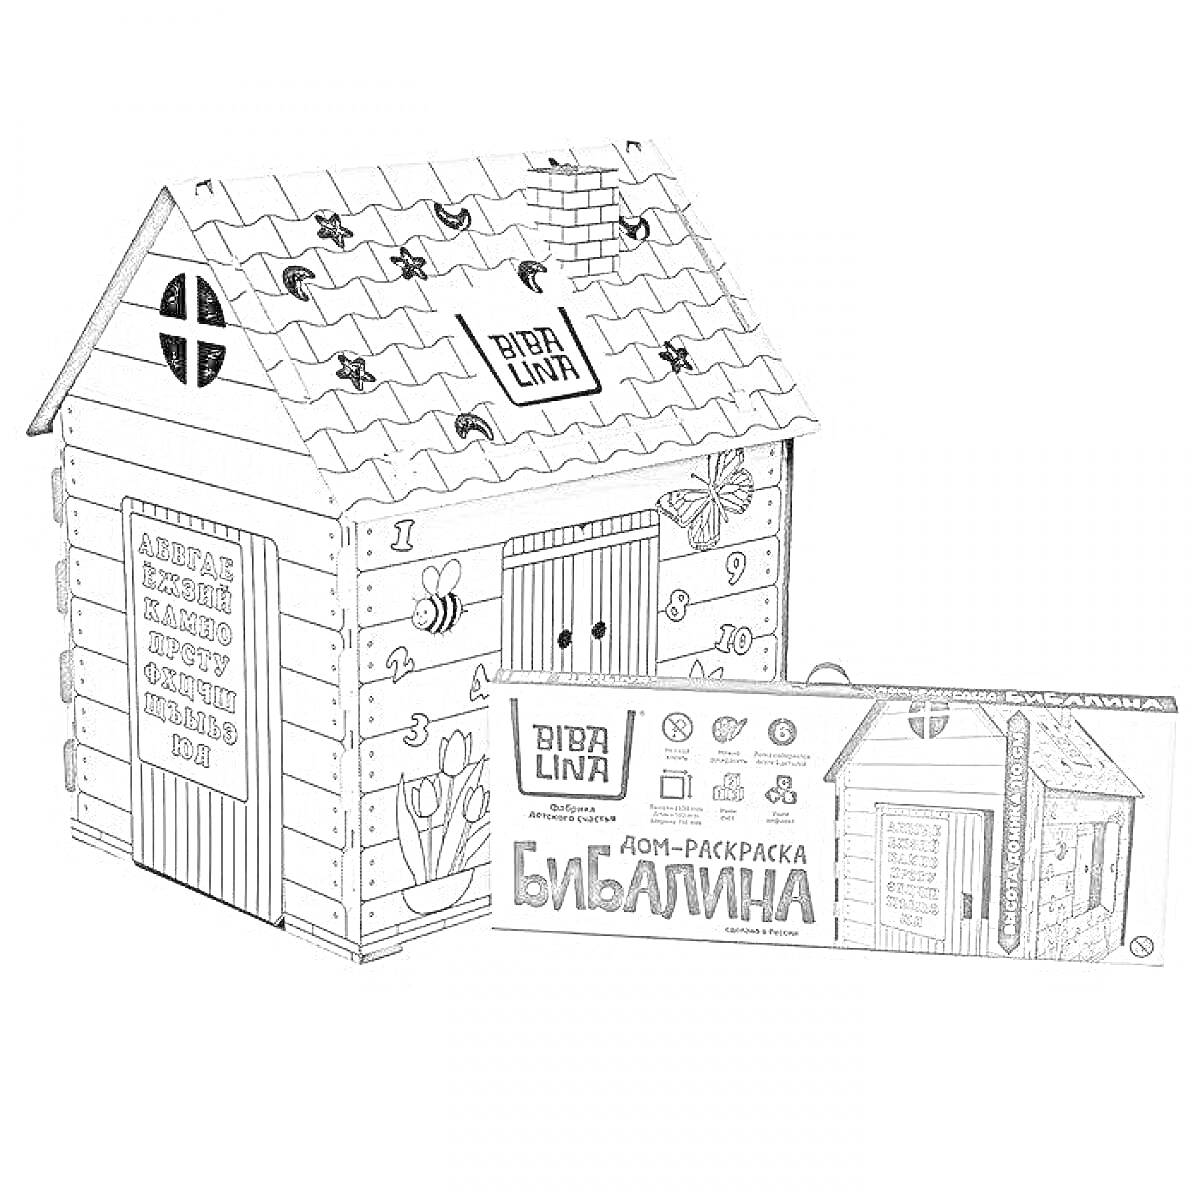 Дом-раскраска с окнами, дверью и кирпичной кладкой на крыше, надписями на поверхности, деревьями и цветами на стенах, с изображением коробки упаковки